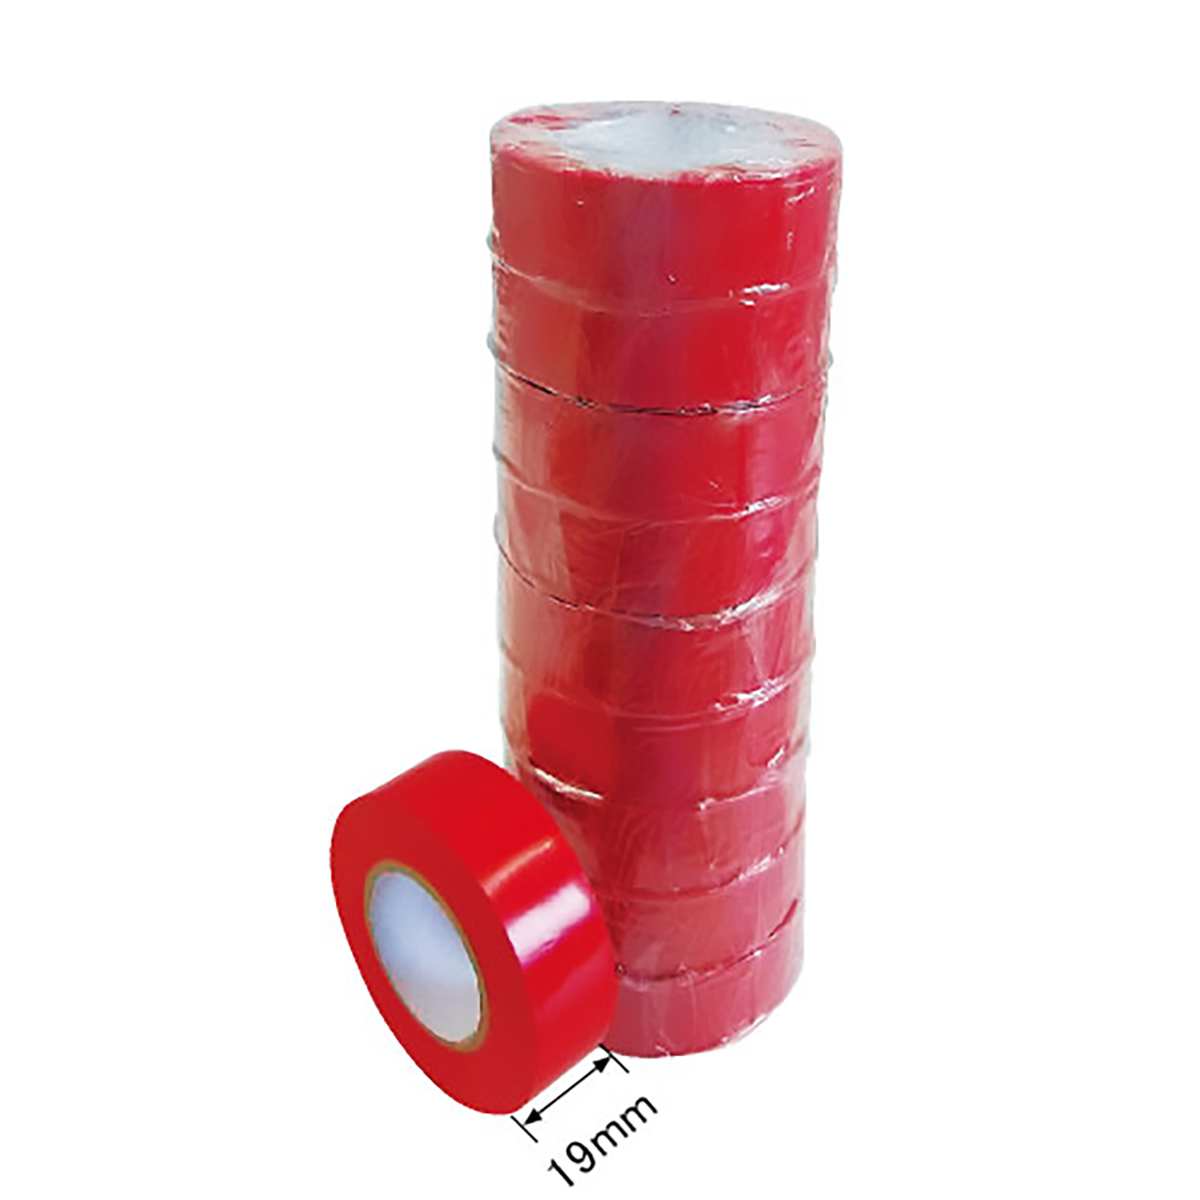 ビニールテープ JIS-C2336適合品 赤色 10巻セット